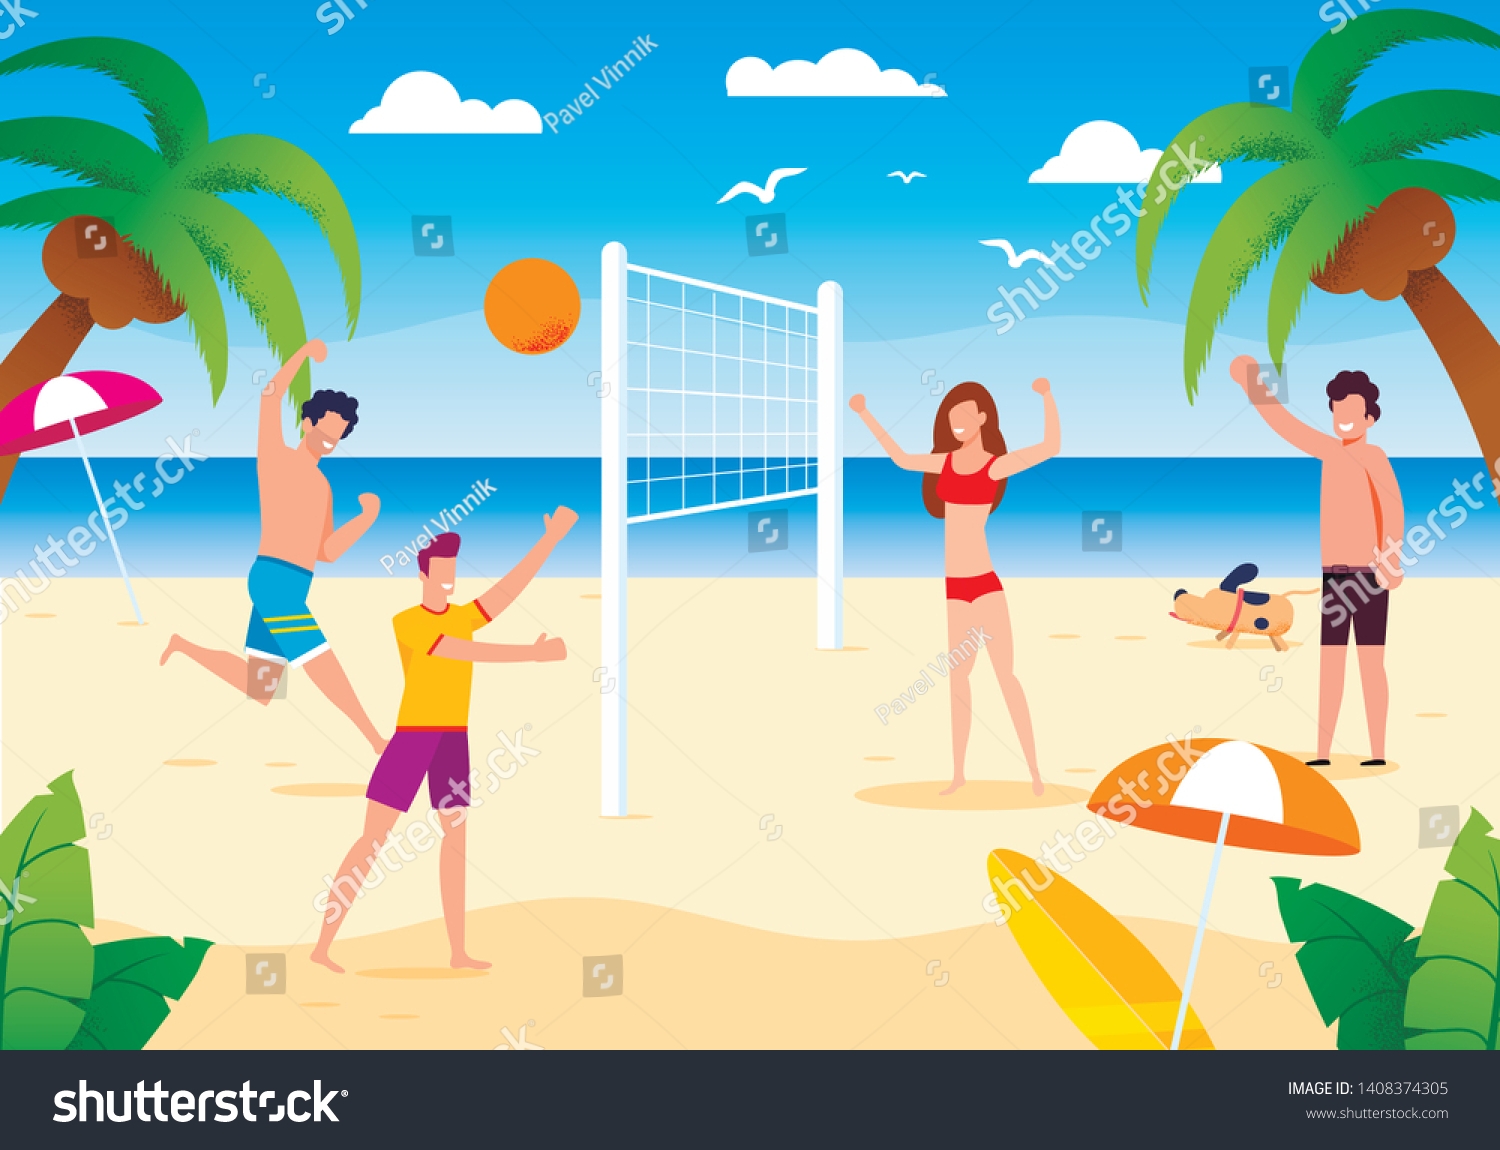 Люди играющие в волейбол на пляже картина